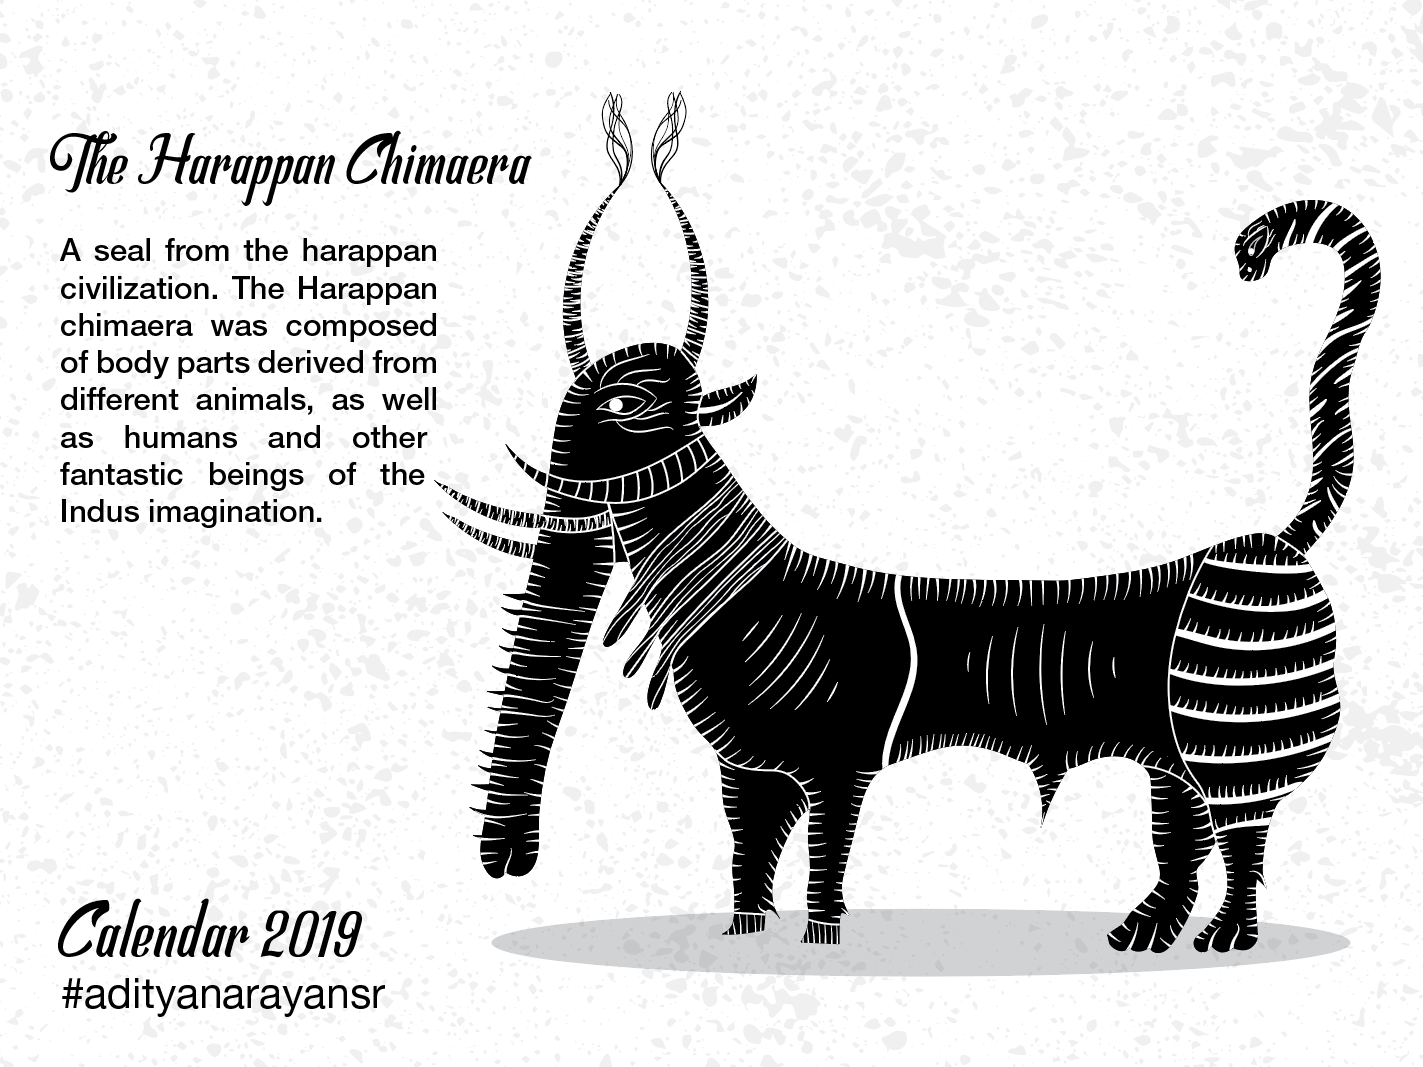 The Harappan Chimaera by Aditya Narayan on Dribbble